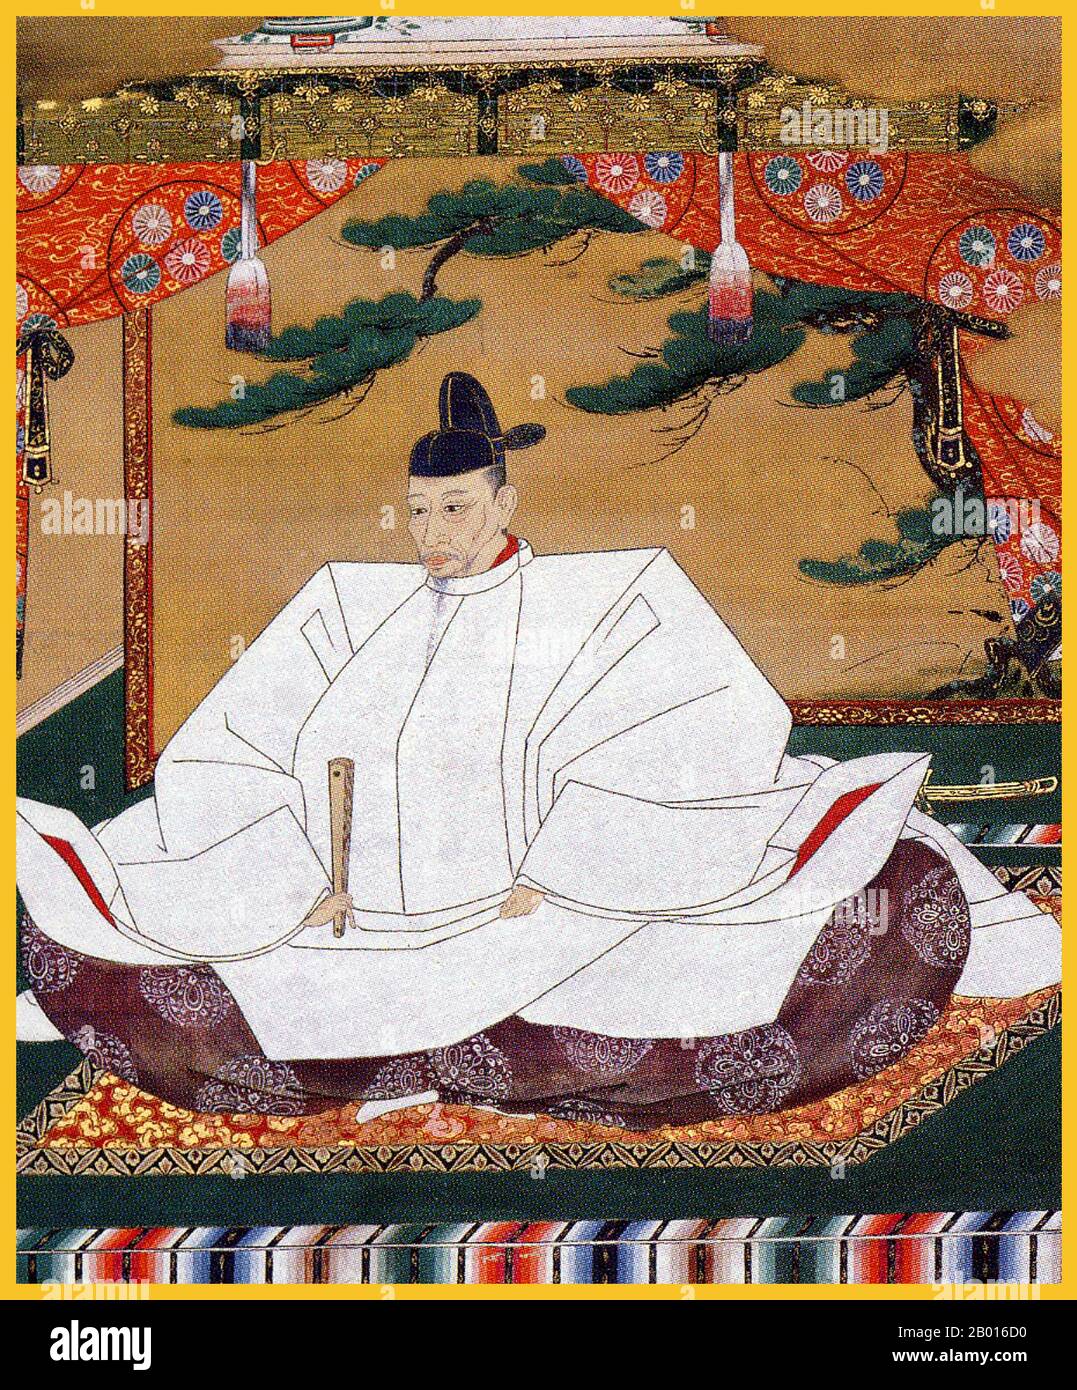 Giappone: Toyotomi Hideyoshi (2 febbraio 1536 - 18 settembre 1598), secondo unifier del Giappone. Dipinto a scroll appeso di Kano Mitsunobu (1565-1608), c.. 1601. Toyotomi Hideyoshi, nato Kinoshita Tokichiro, fu un daimyo nel periodo Sengoku che unificò le fazioni politiche del Giappone. Successe al suo ex signore liegi, Oda Nobunaga, e portò fine al periodo Sengoku. Il periodo della sua regola è spesso chiamato il periodo di Momoyama, che prende il nome dal castello di Hideyoshi. È noto per un certo numero di eredità culturali ed è considerato come il secondo 'grande unificatore' del Giappone. Foto Stock